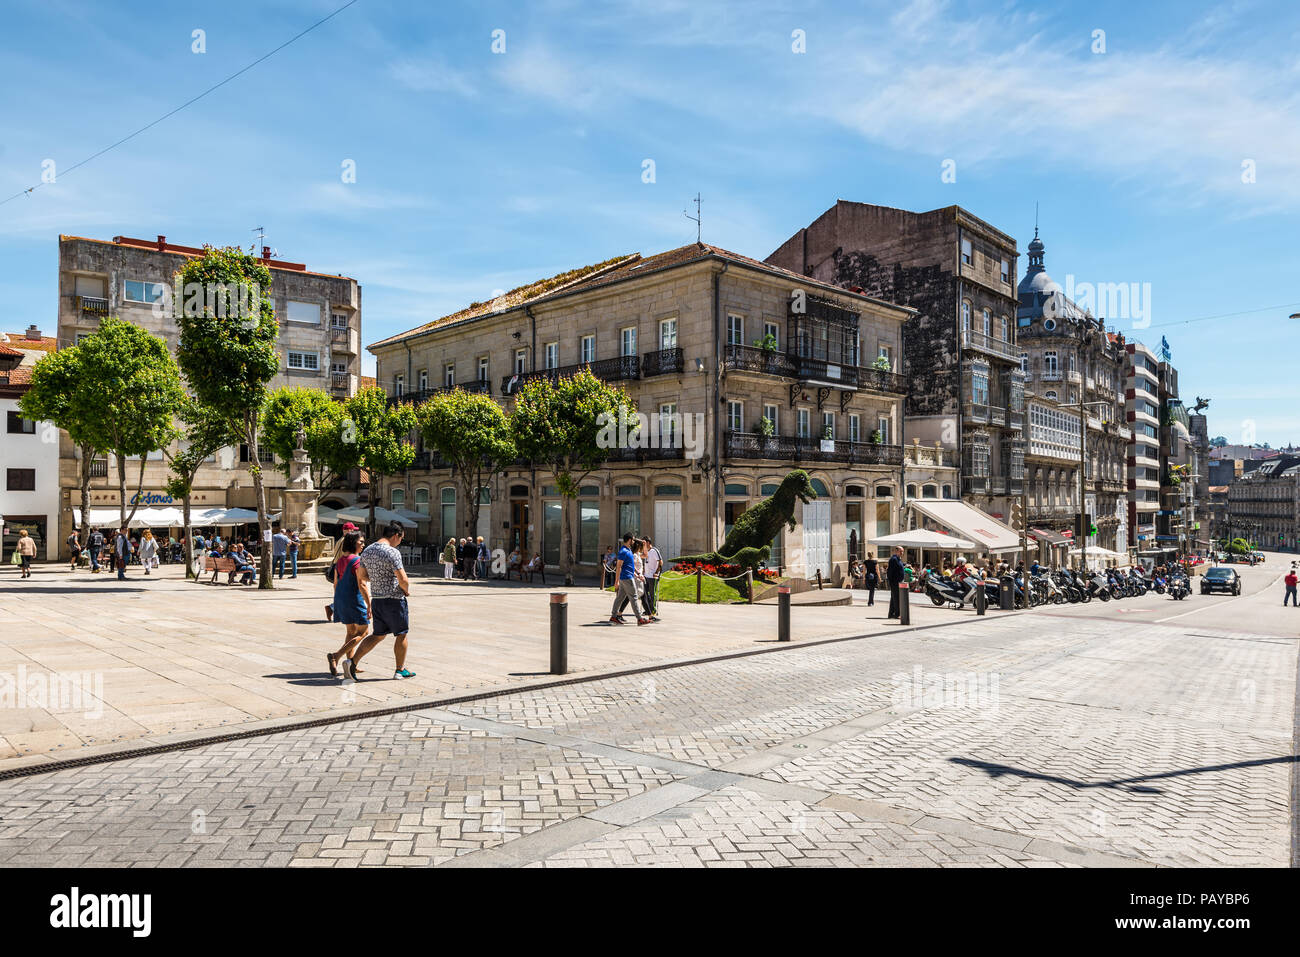 Vigo, Spagna - 20 Maggio 2017: la vita di strada in antica storica città spagnola di Vigo in Galizia, Spagna. Giorno ordinario in una strada di Vigo. Foto Stock